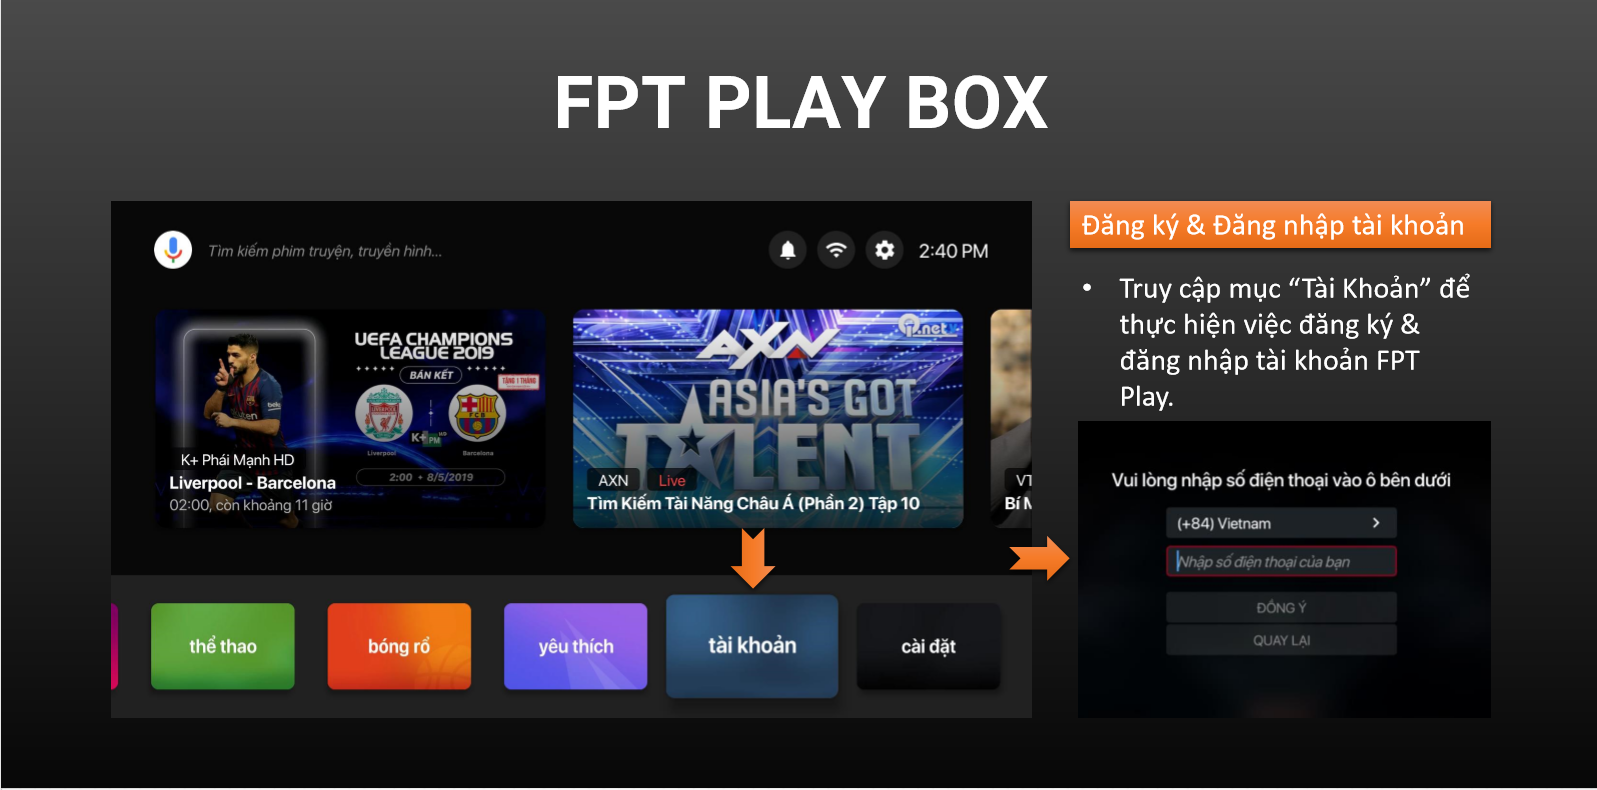 Bước 1 mua trên FPT Play Box